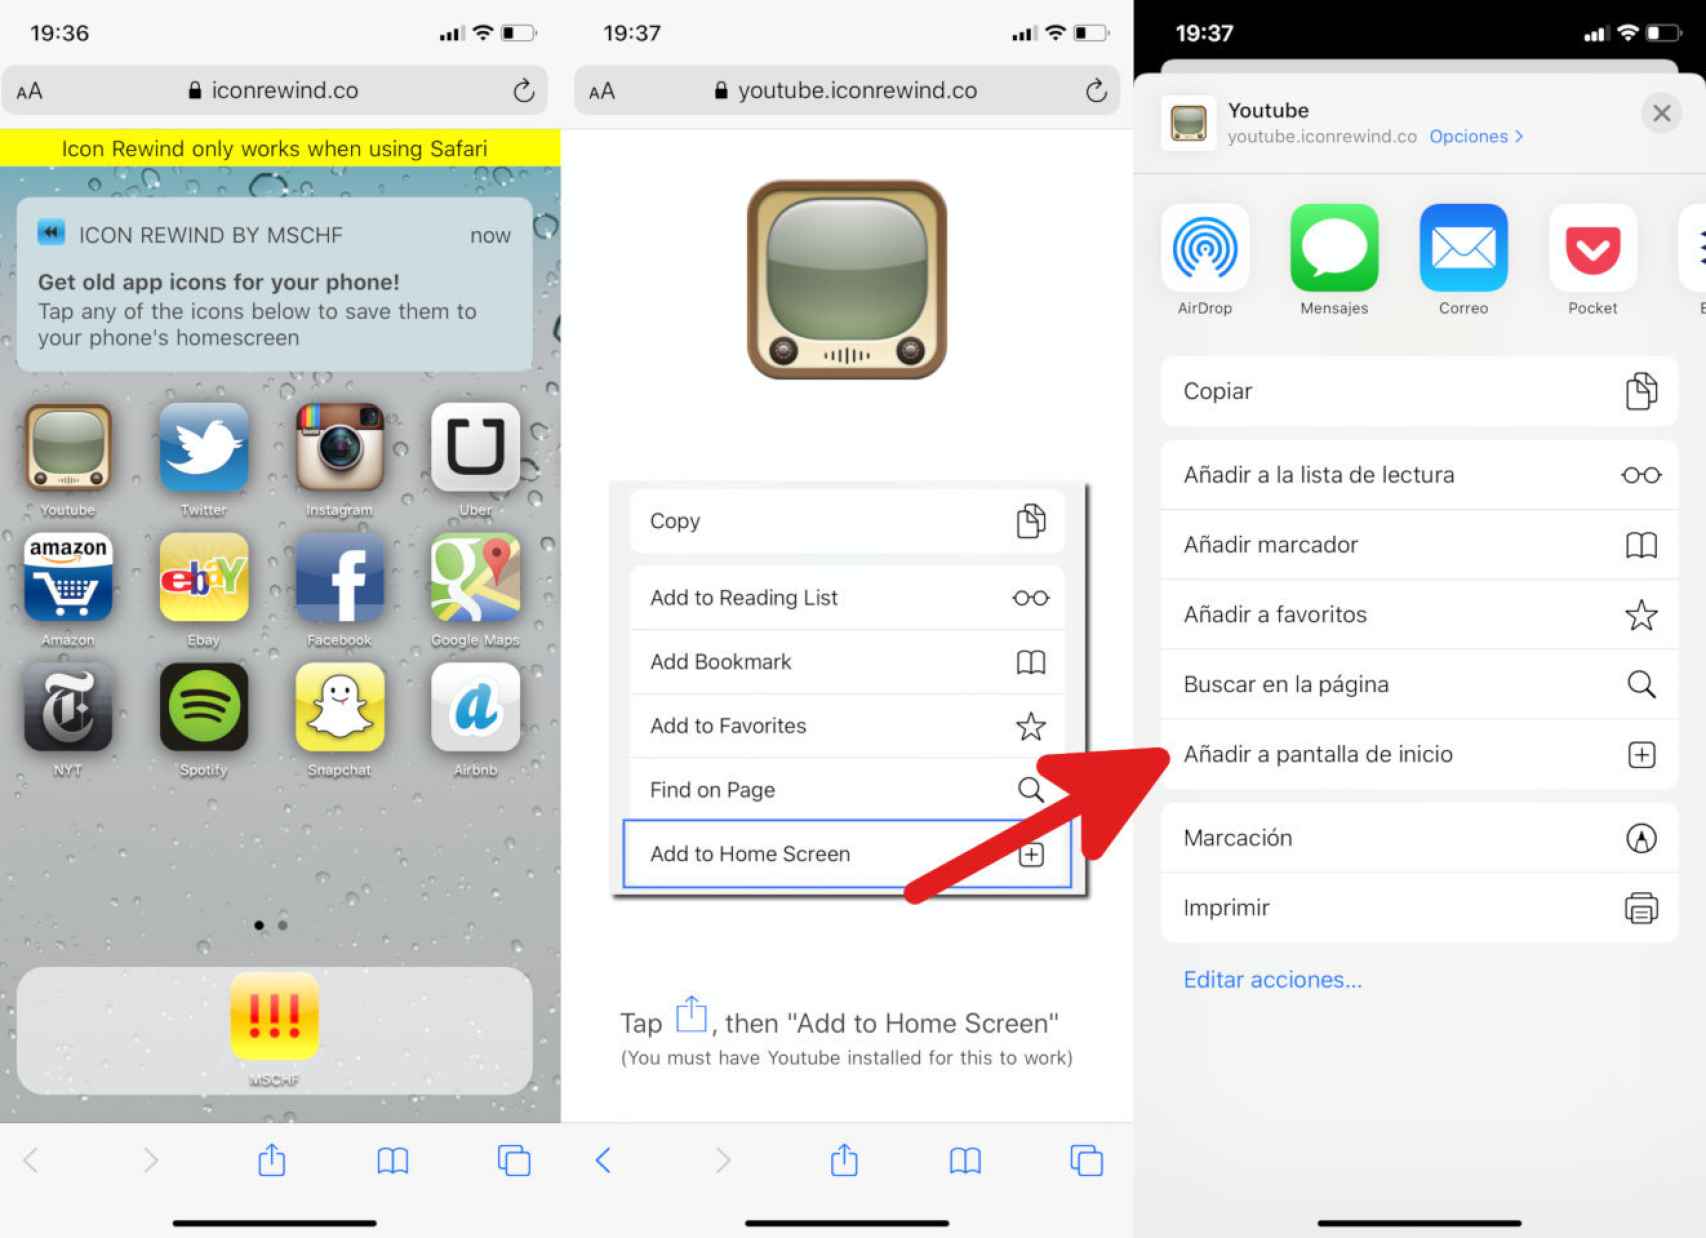 Proceso para conseguir nuevos iconos 'retro' para nuestras apps de iOS